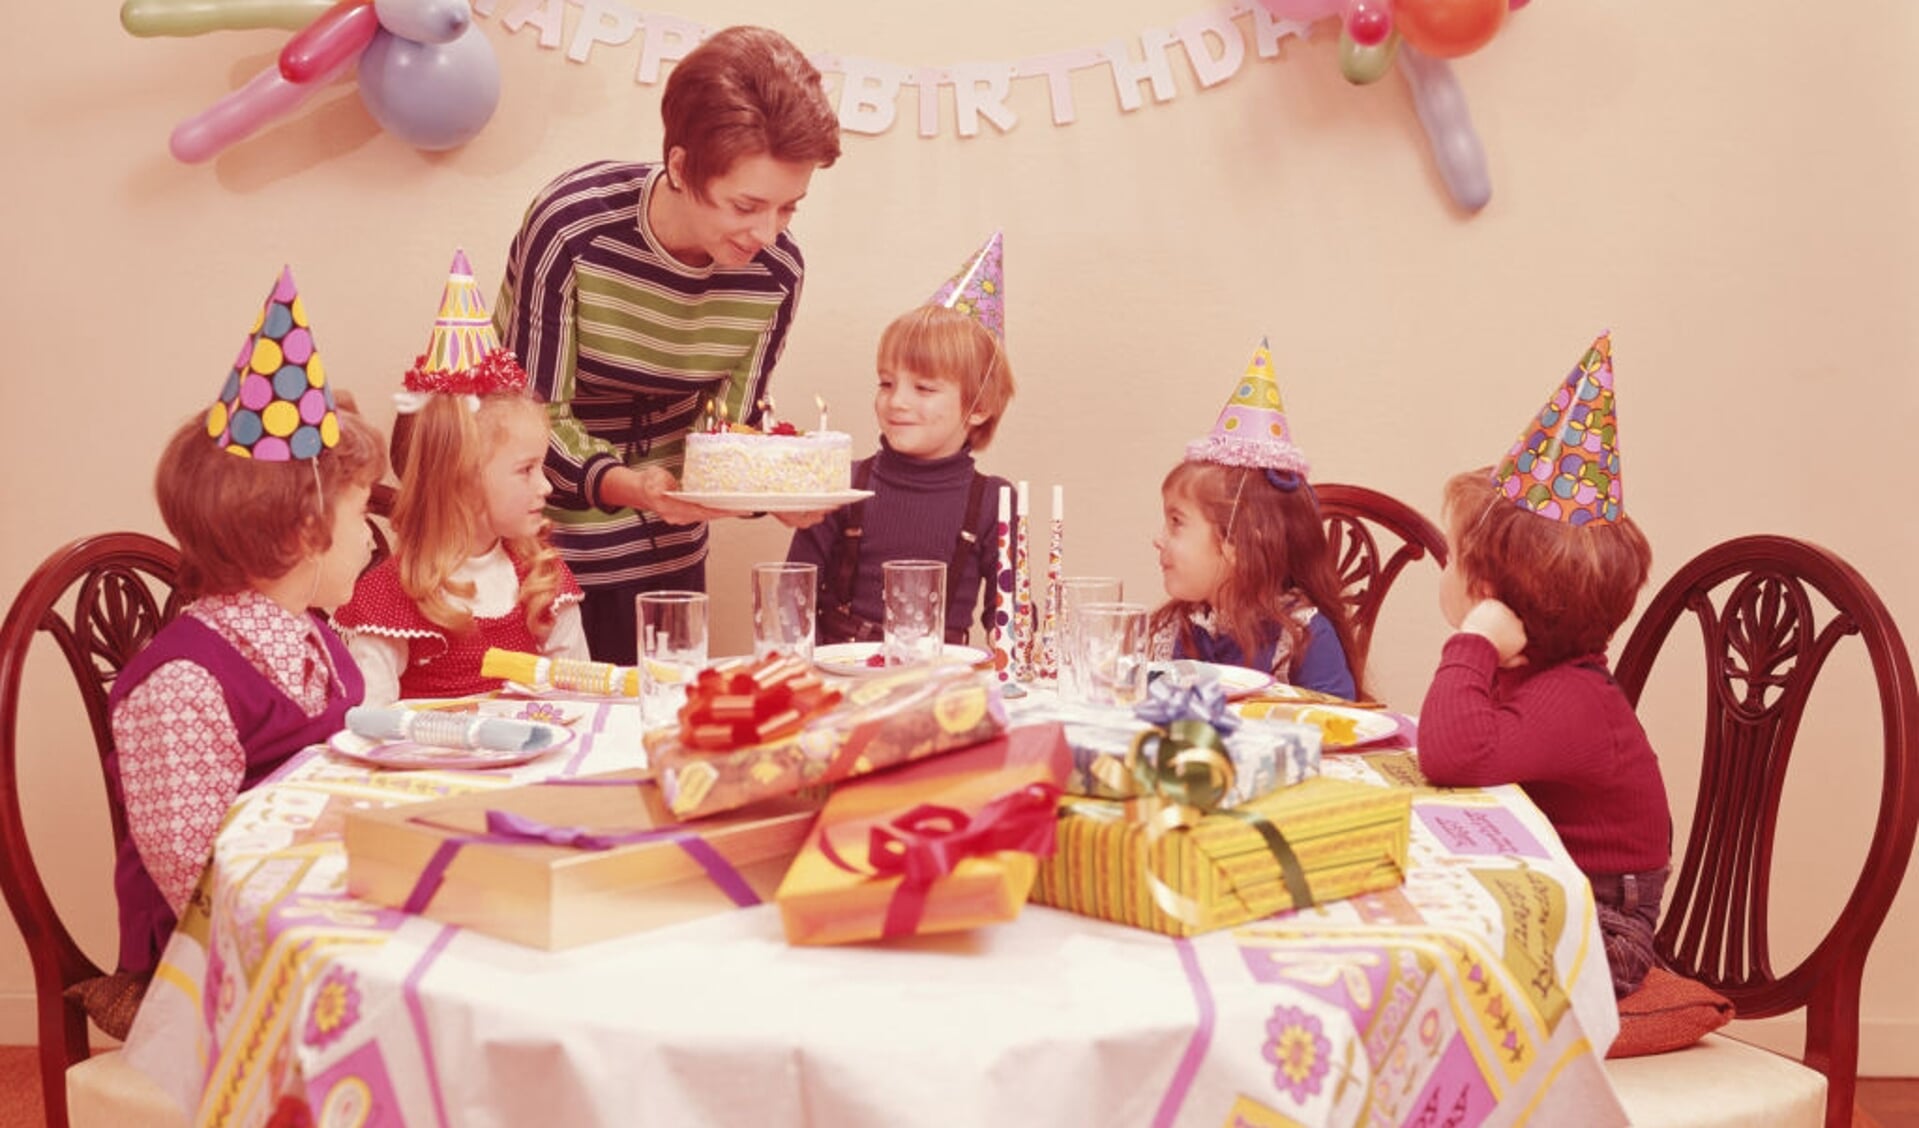 De verjaardag is voor het Nederlandse kind het hoogtepunt van het jaar, aldus Irene Stengs.